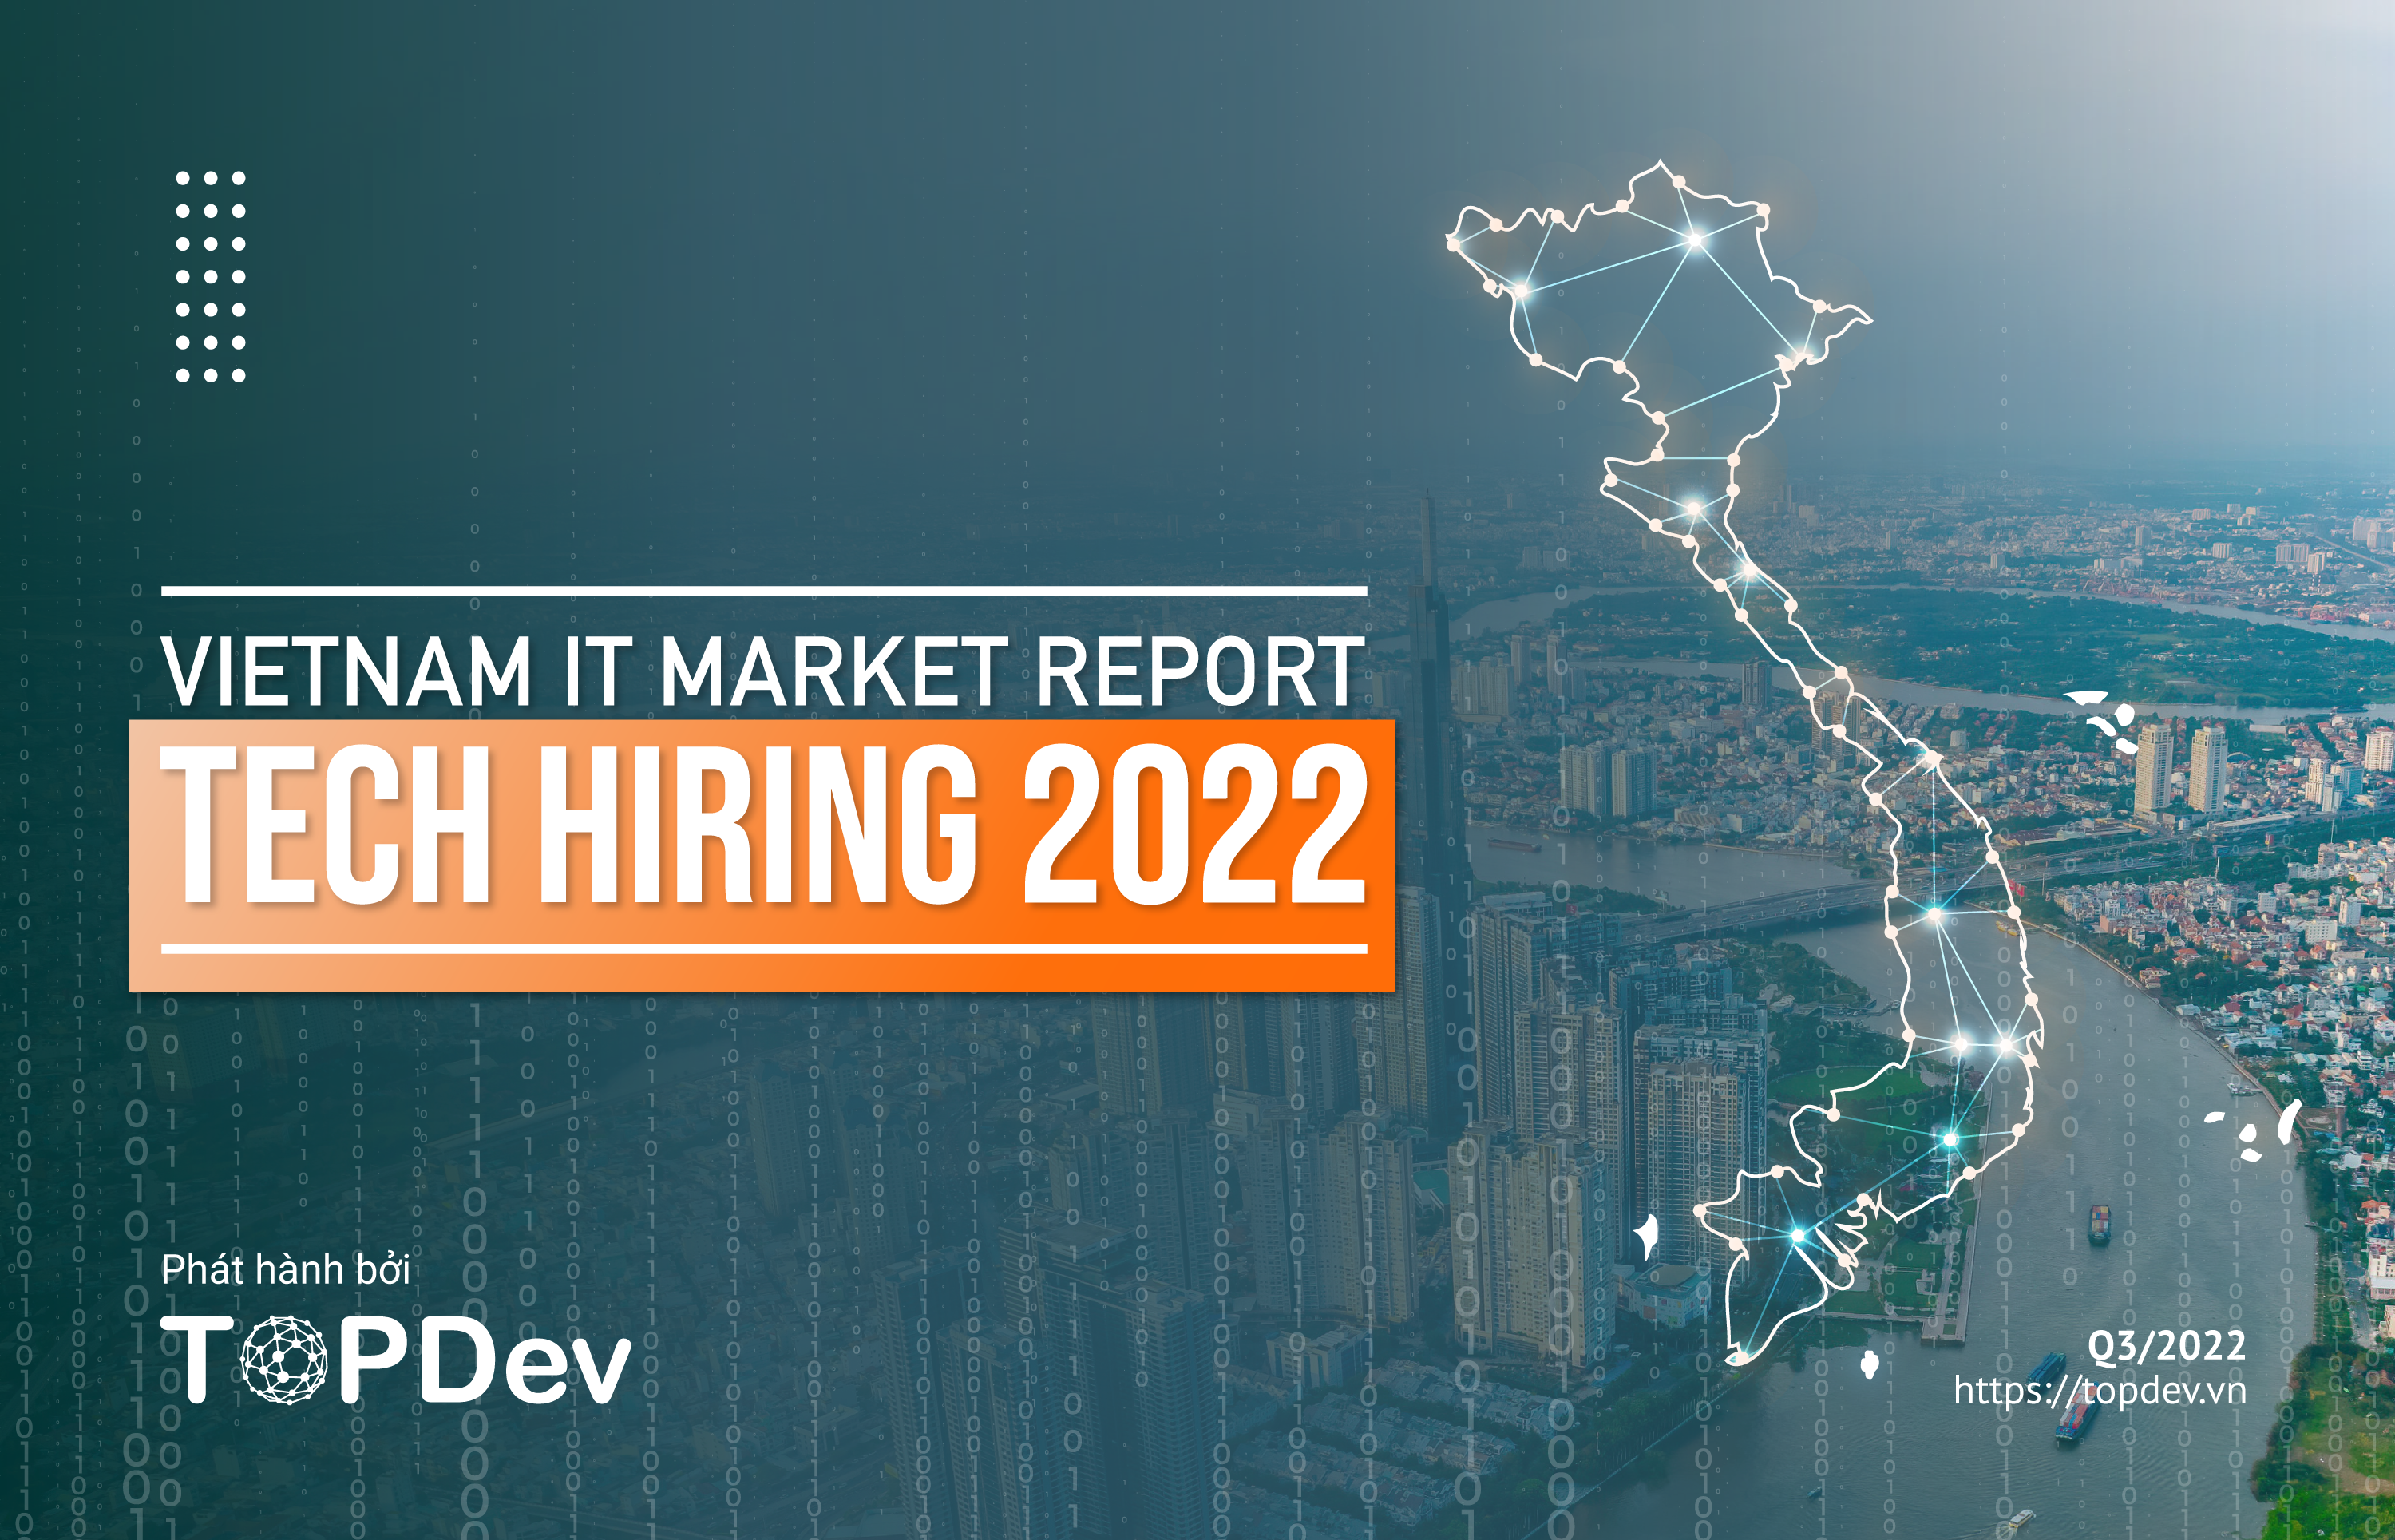 Các doanh nghiệp công nghệ sẽ cạnh tranh khốc liệt nhưng cũng mang đến những cơ hội mới cho các chuyên gia IT. Năm 2024 sẽ là thời điểm thú vị để theo dõi sự phát triển của thị trường IT Việt Nam.